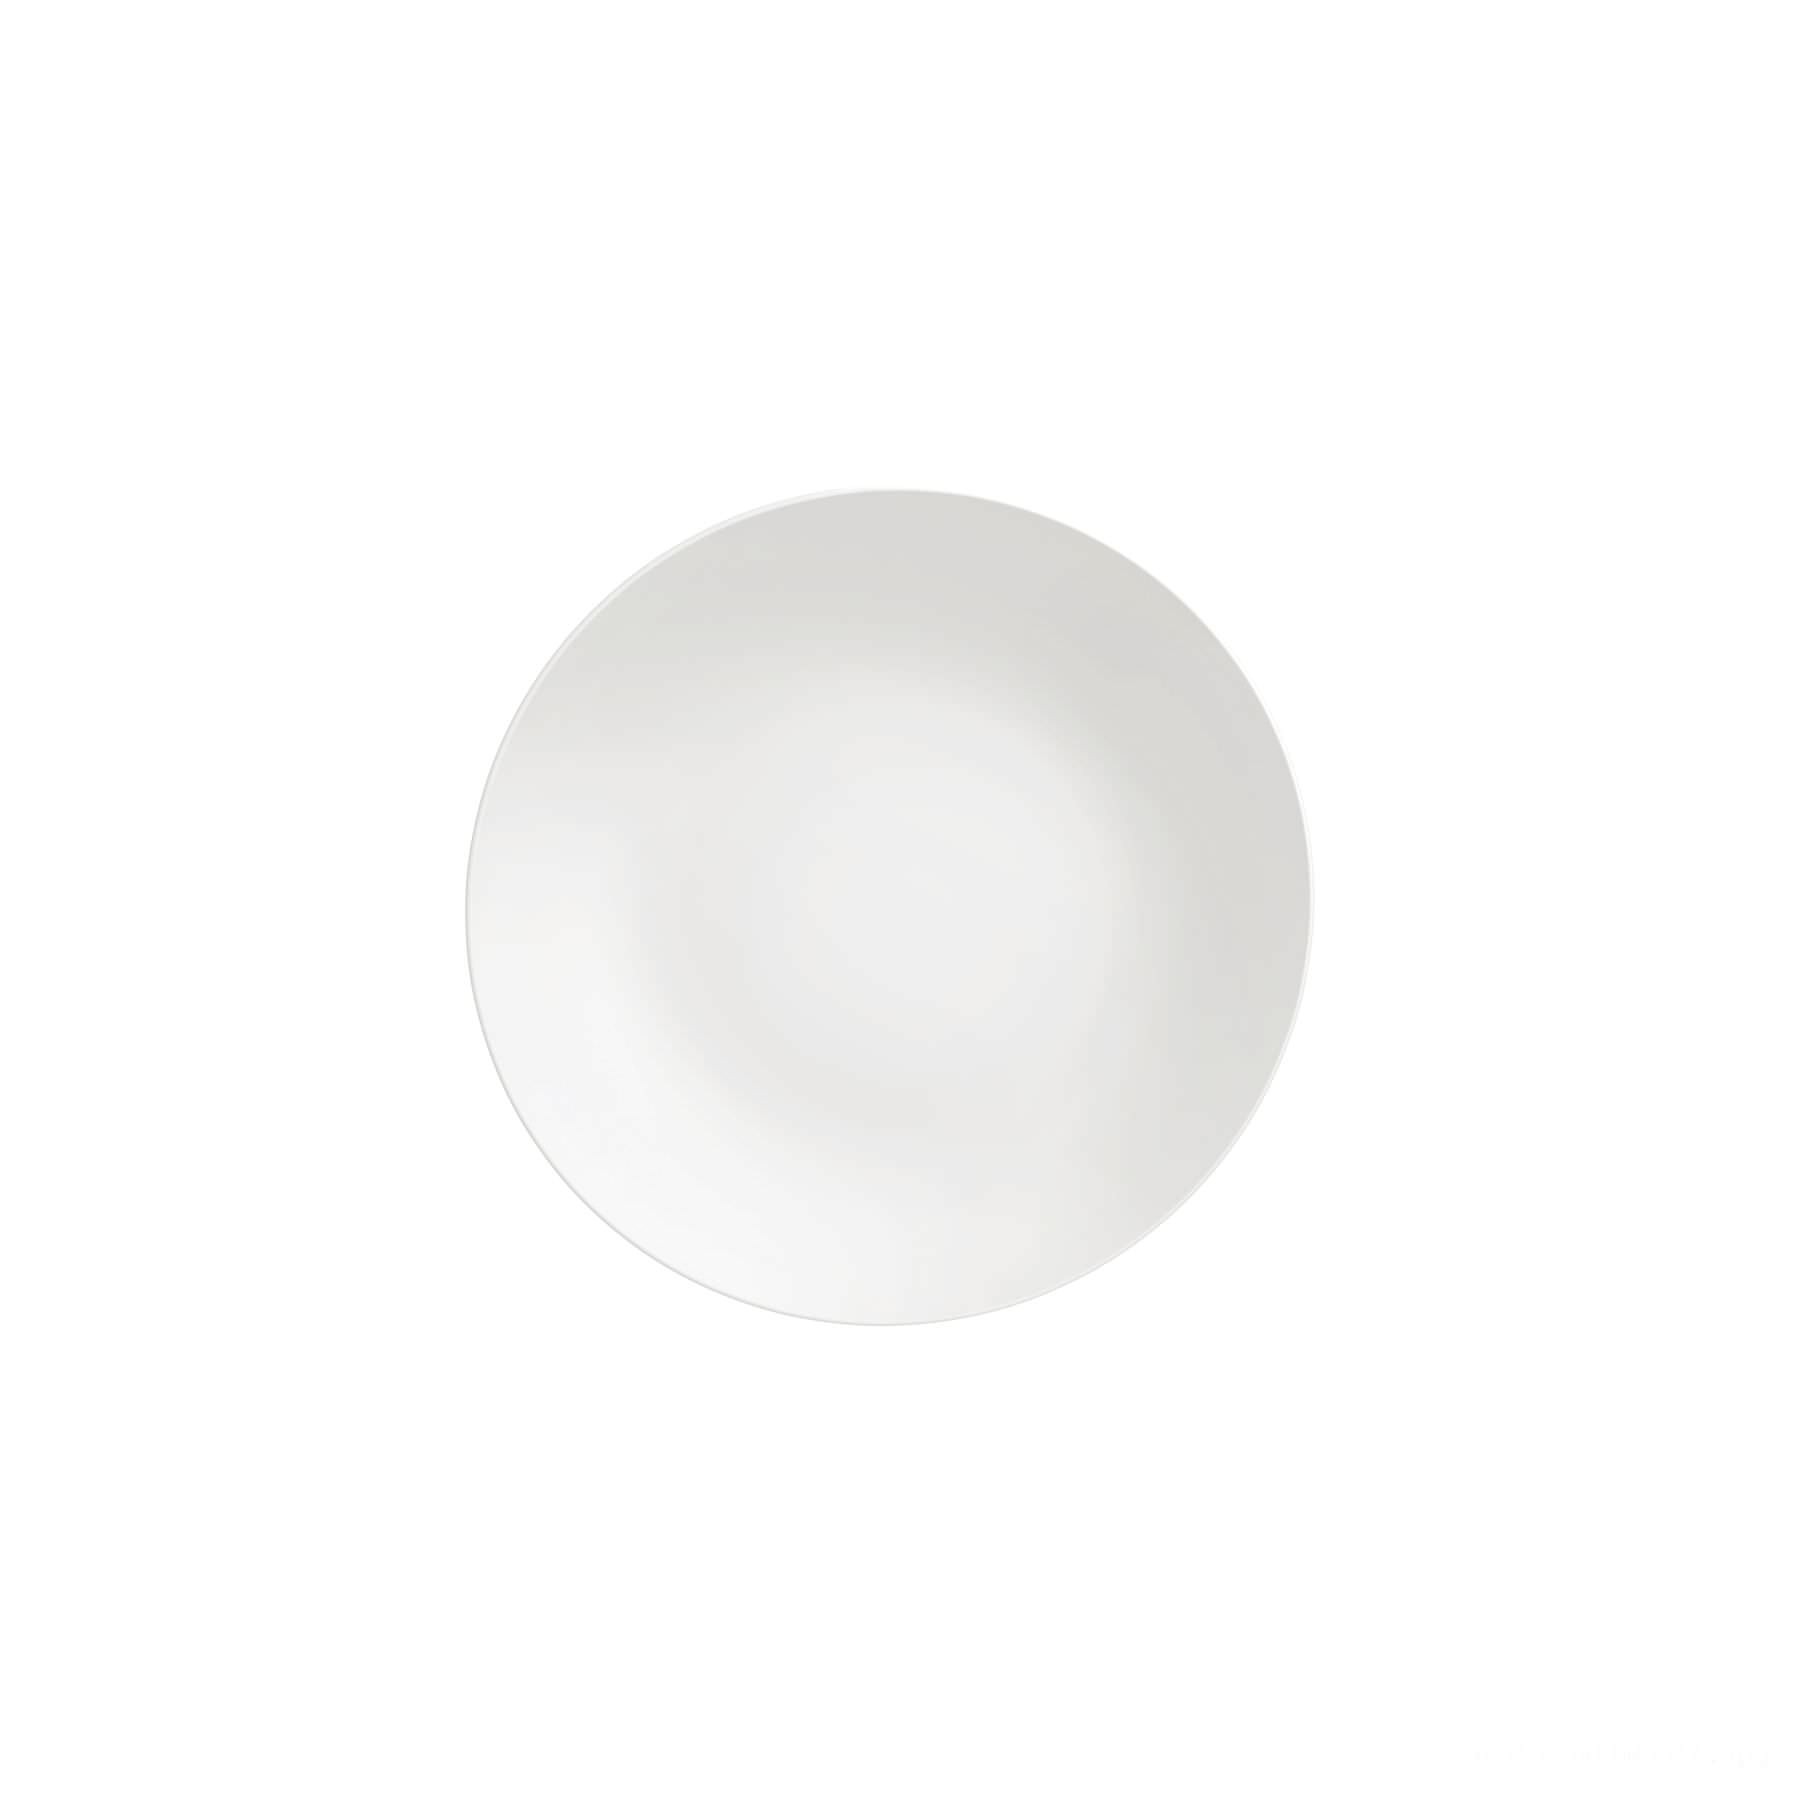 Prato Raso Leonora em Porcelana Branca 25 cm